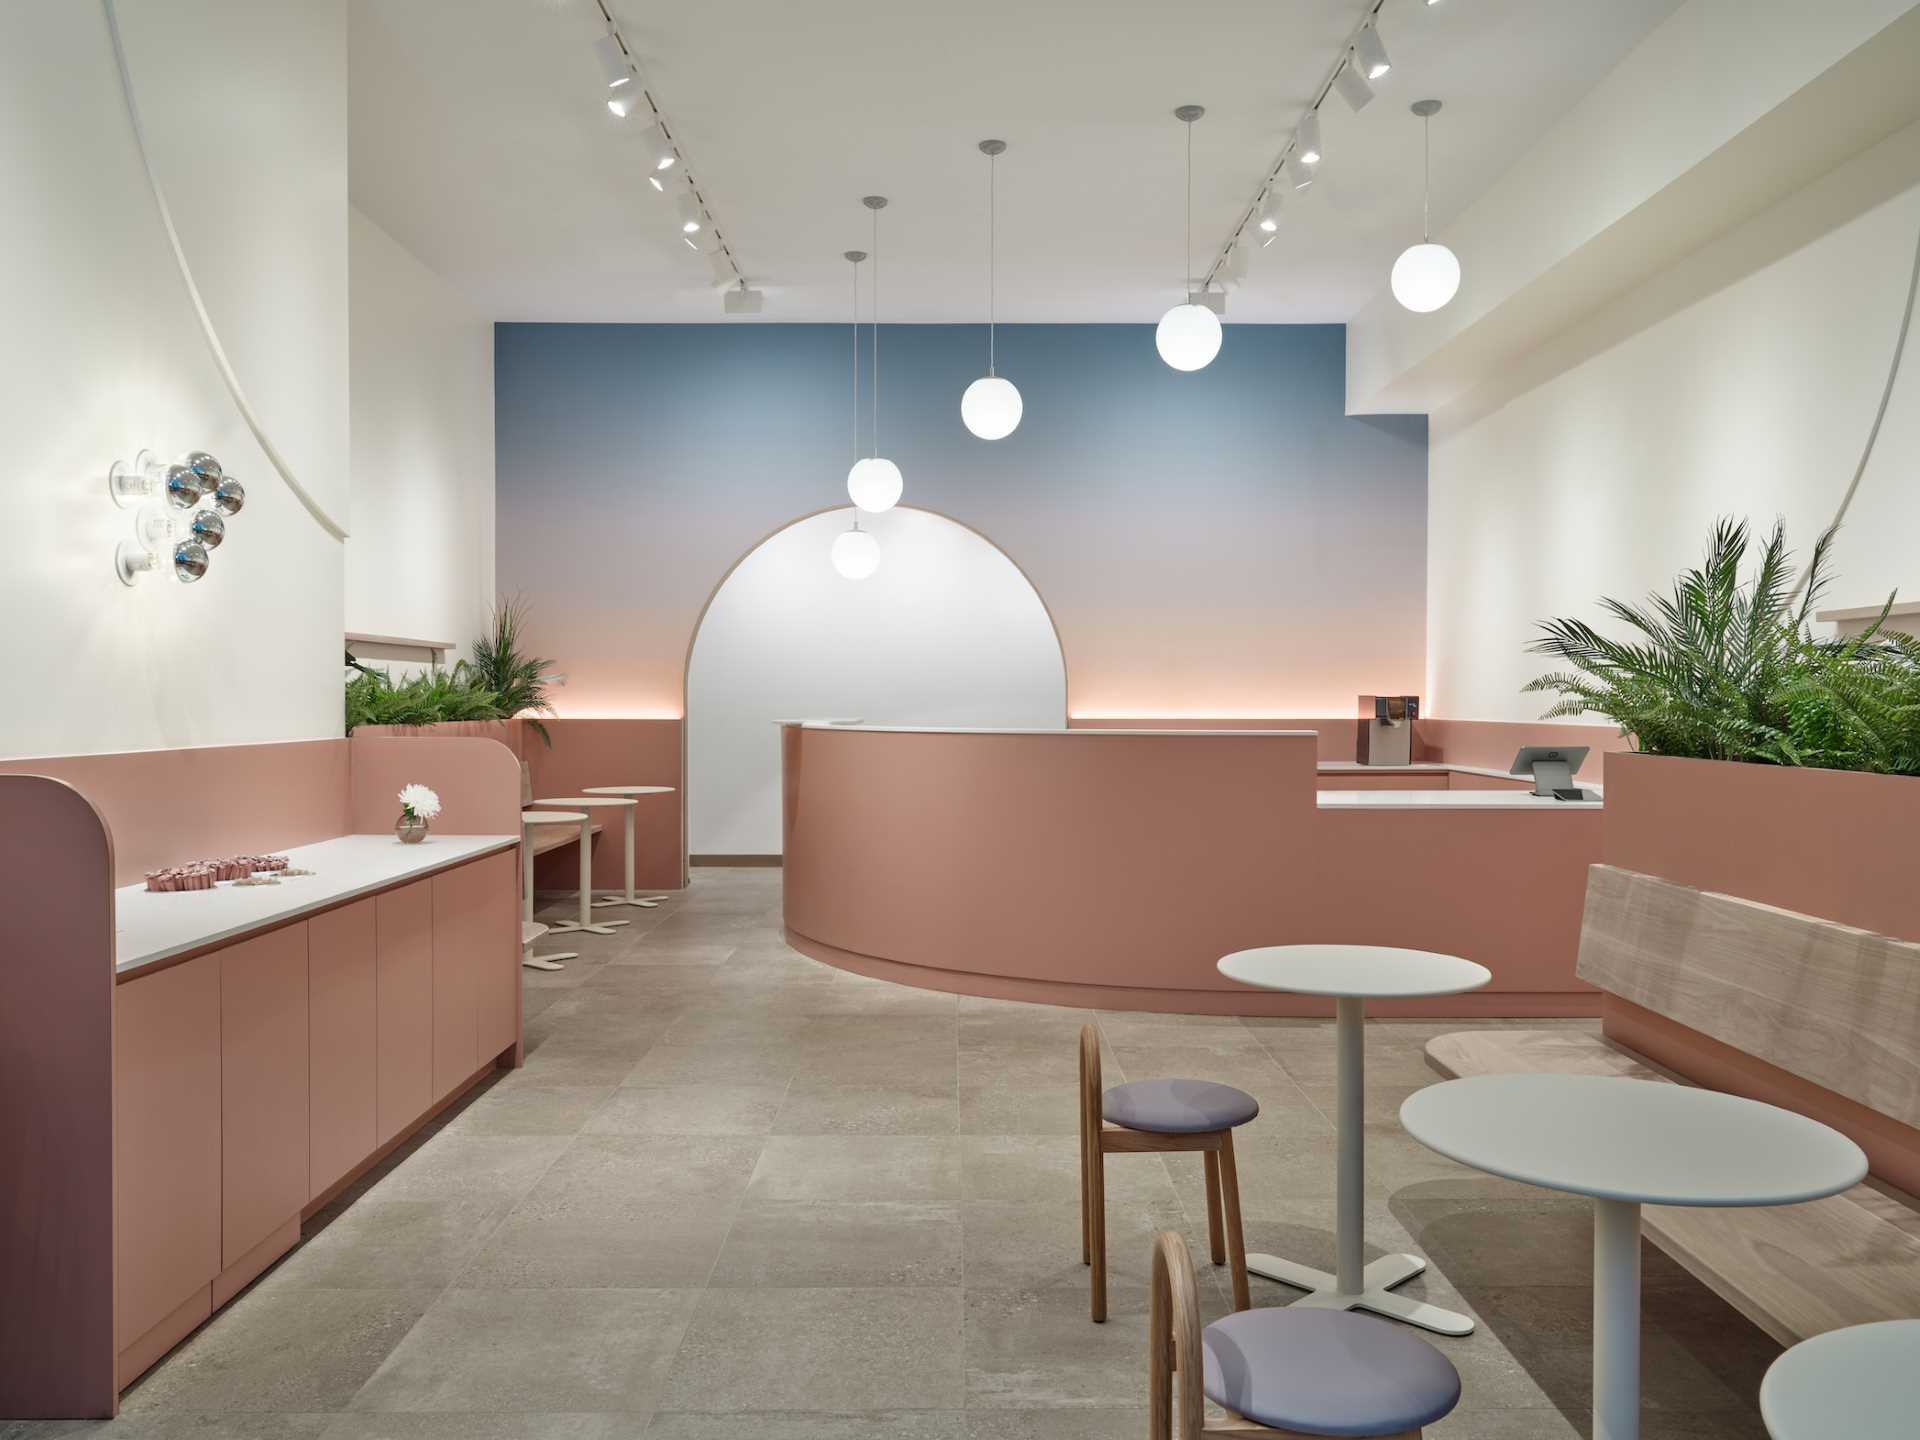 یک کافه مدرن با فضایی آرام و آرام، دیواری رنگارنگ.  و طرح های منحنی